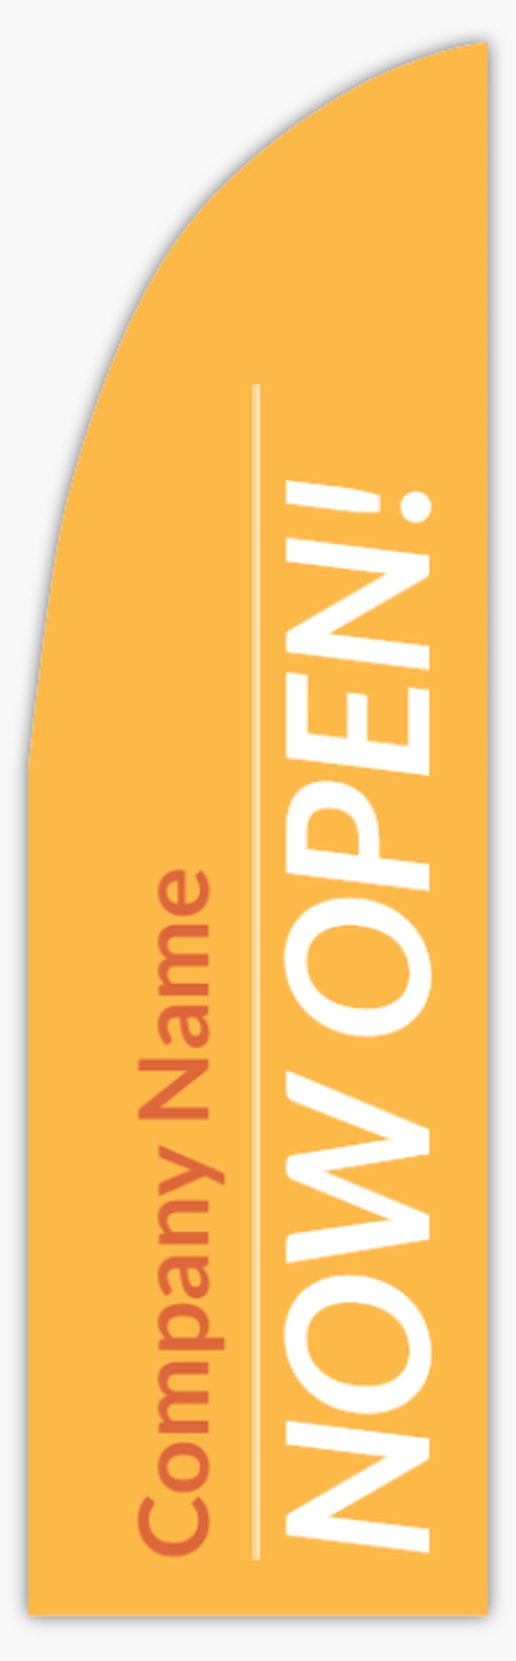 A reopening plain orange white design